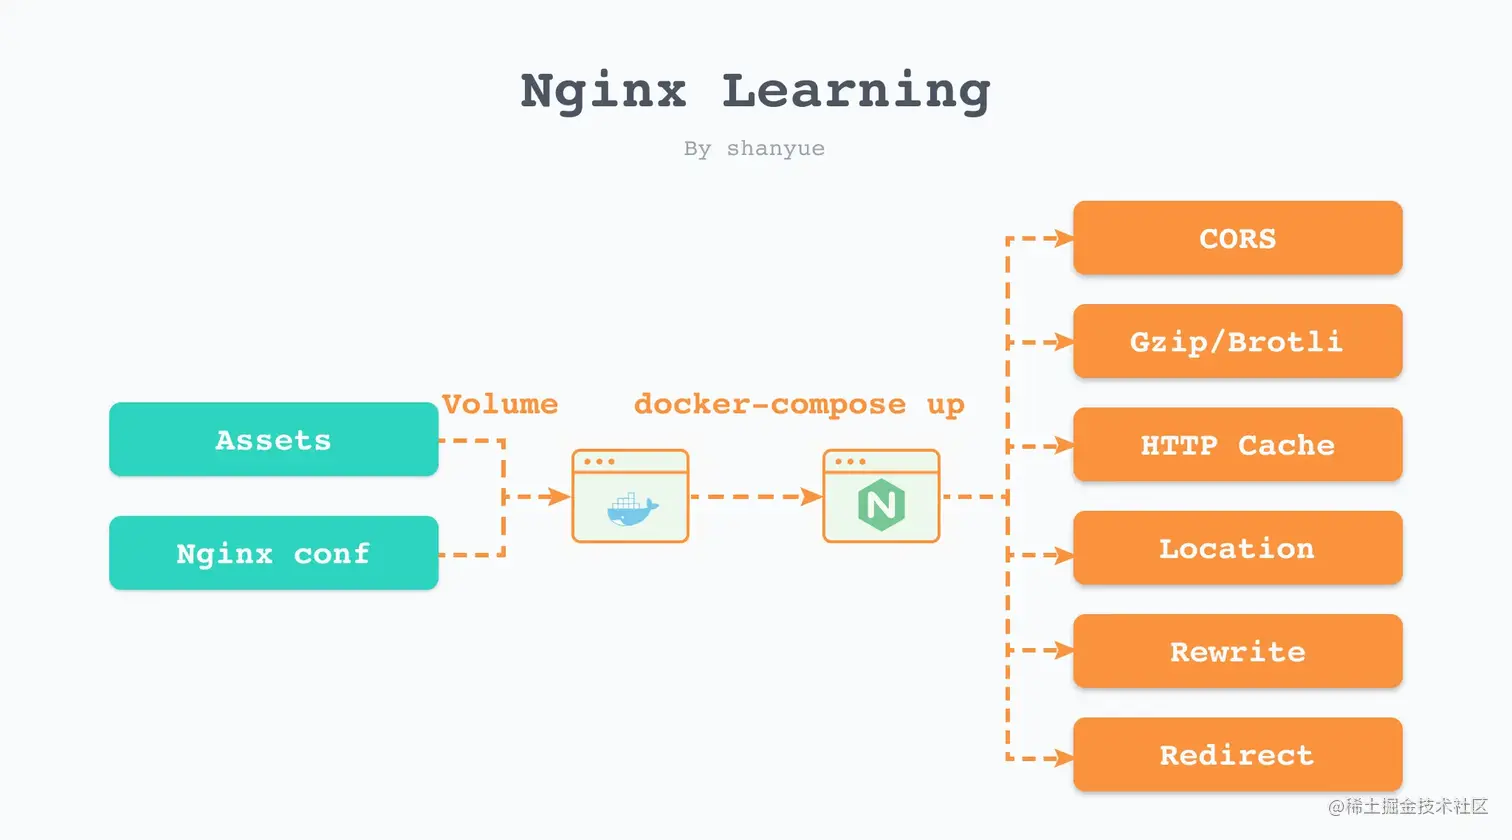 Learning Nginx